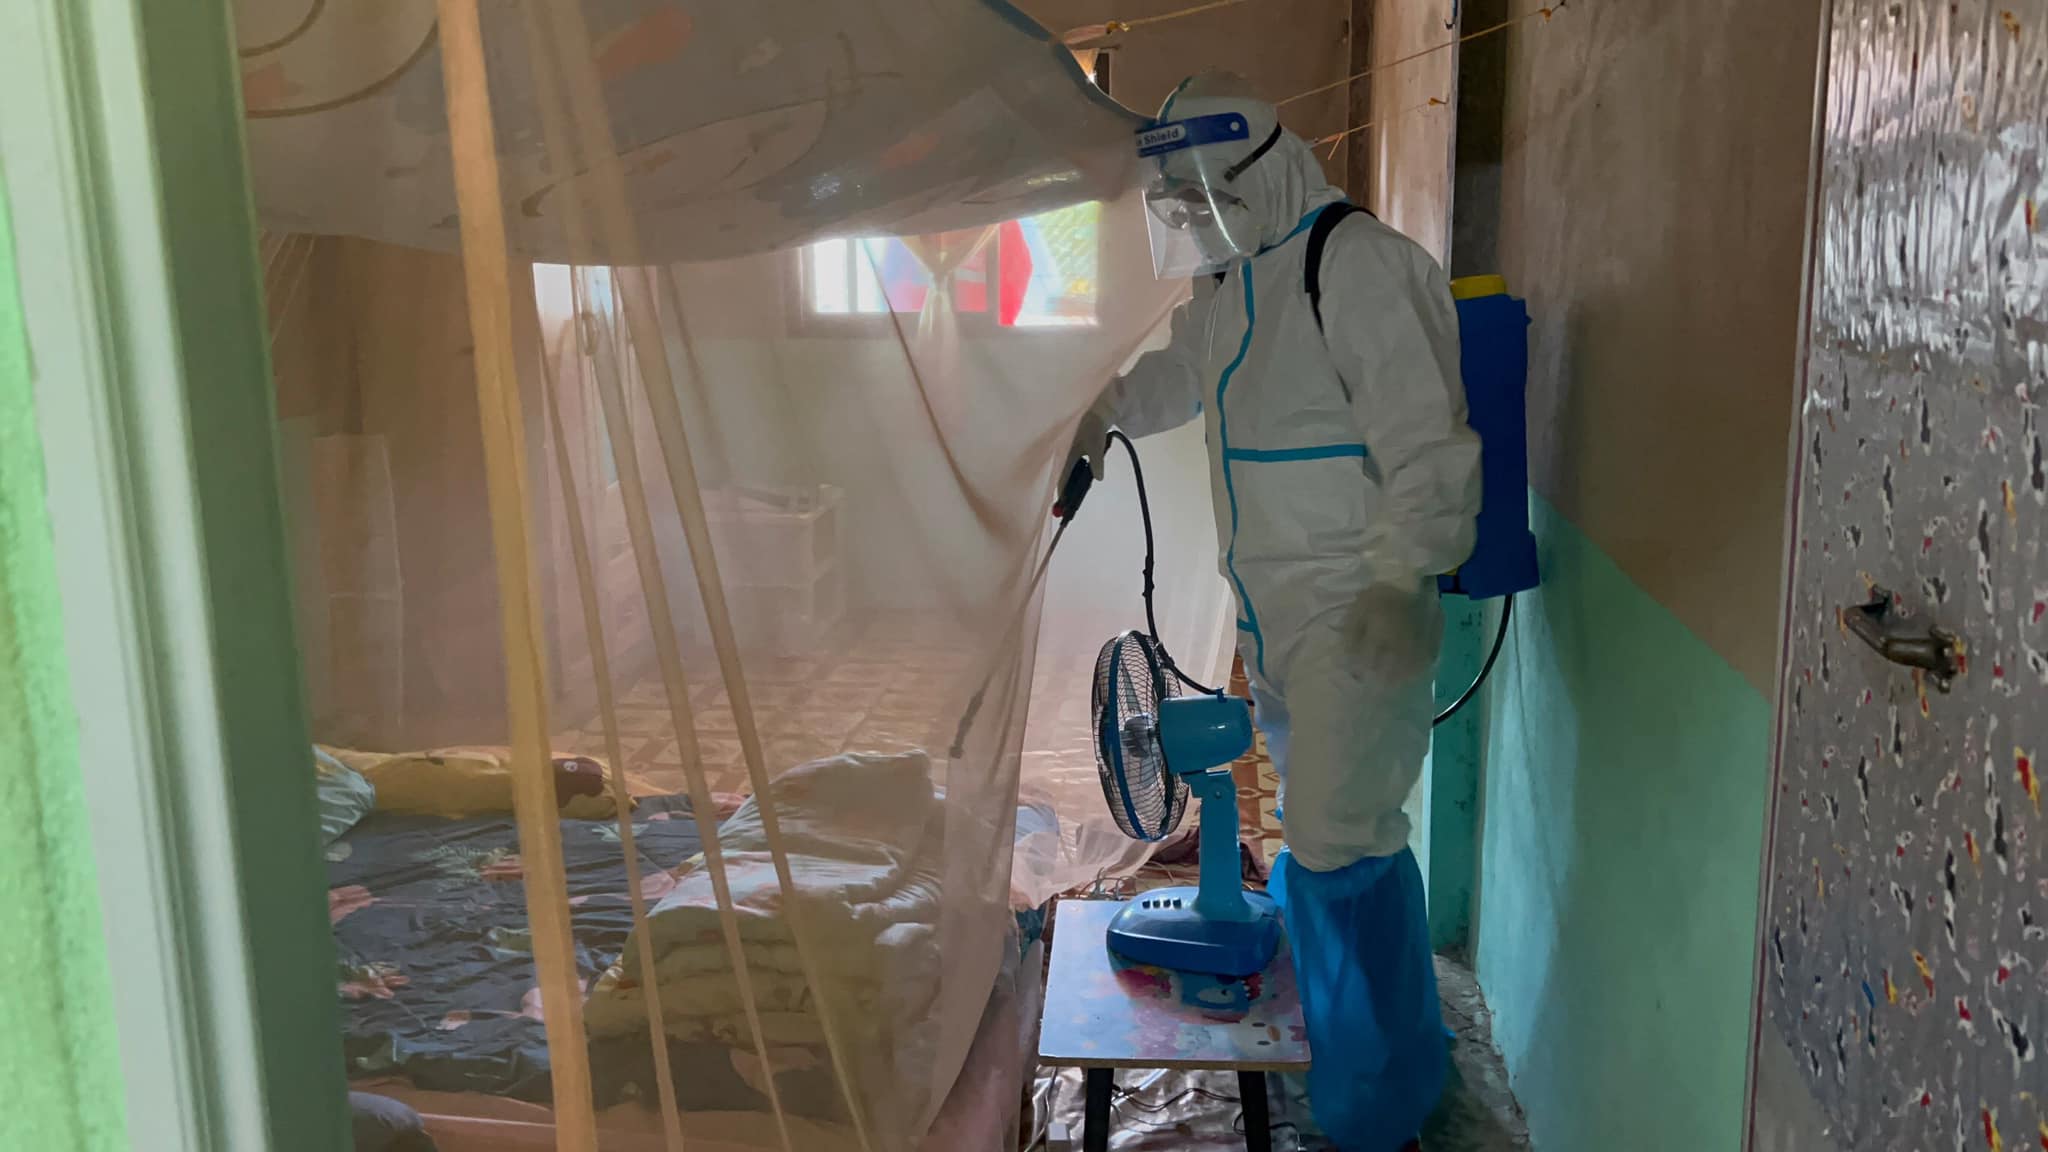 พ่นยาฆ่าเชื้อป้องกันการแพร่ระบาดของโรคติดเชื้อไวรัสโคโรนา 2019 บ้านแช่พลาง